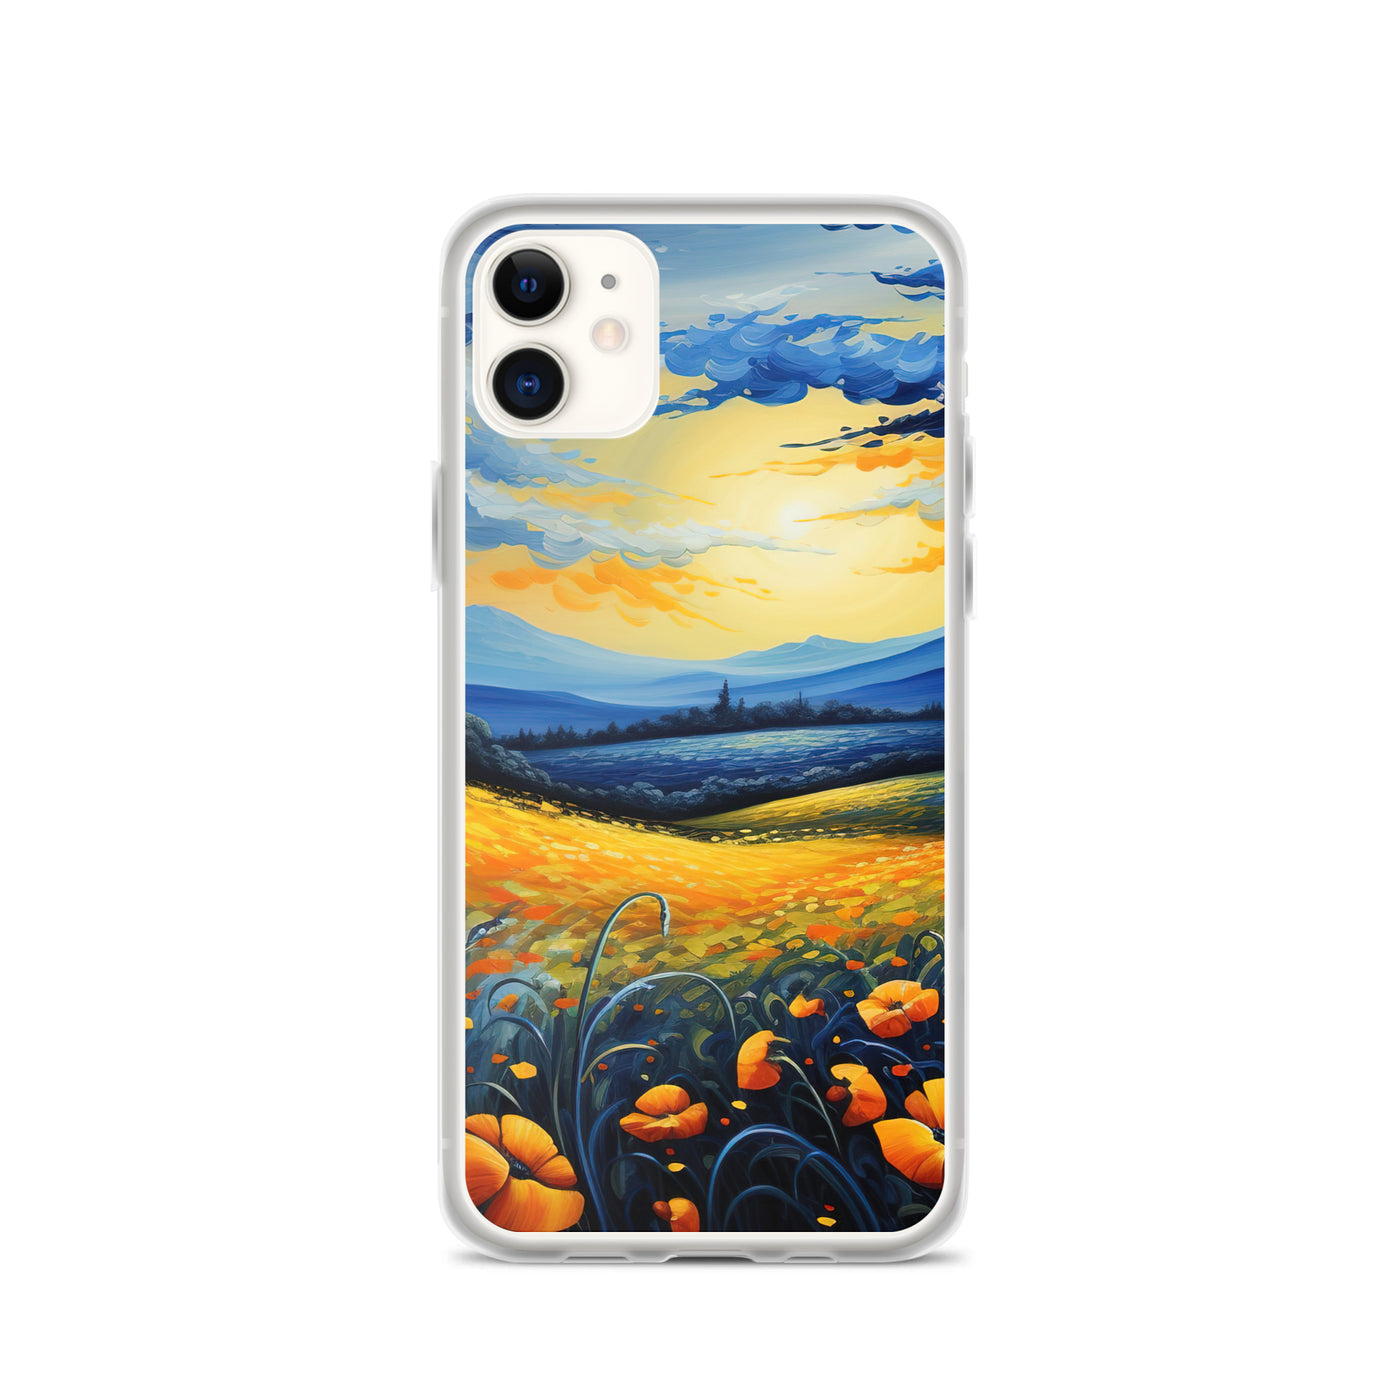 Berglandschaft mit schönen gelben Blumen - Landschaftsmalerei - iPhone Schutzhülle (durchsichtig) berge xxx iPhone 11